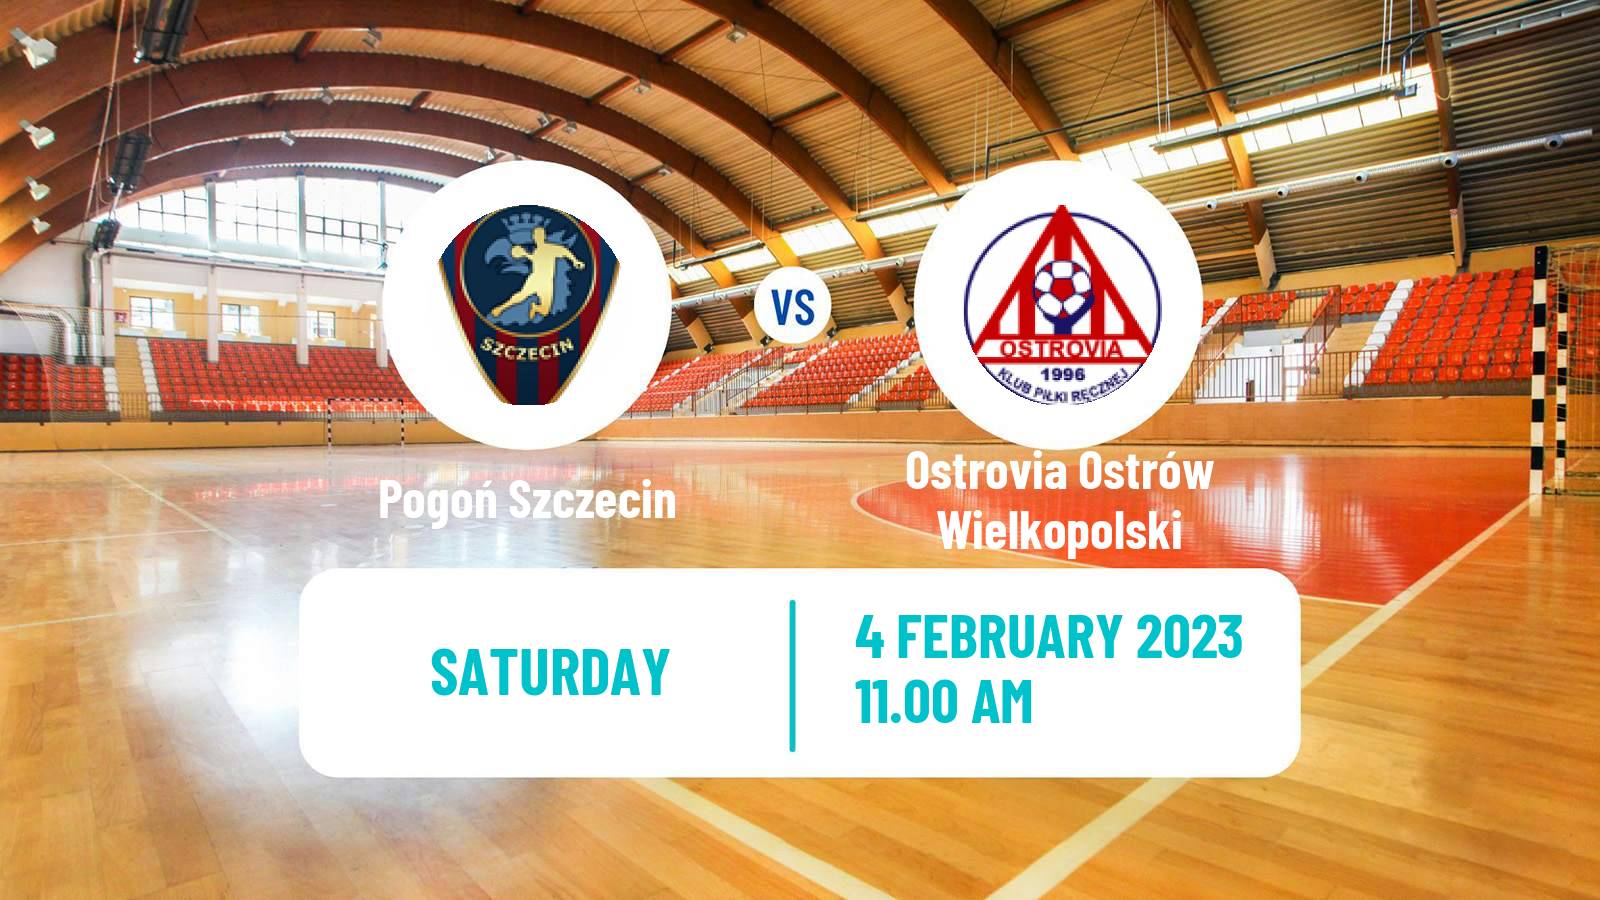 Handball Polish Superliga Handball Pogoń Szczecin - Ostrovia Ostrów Wielkopolski